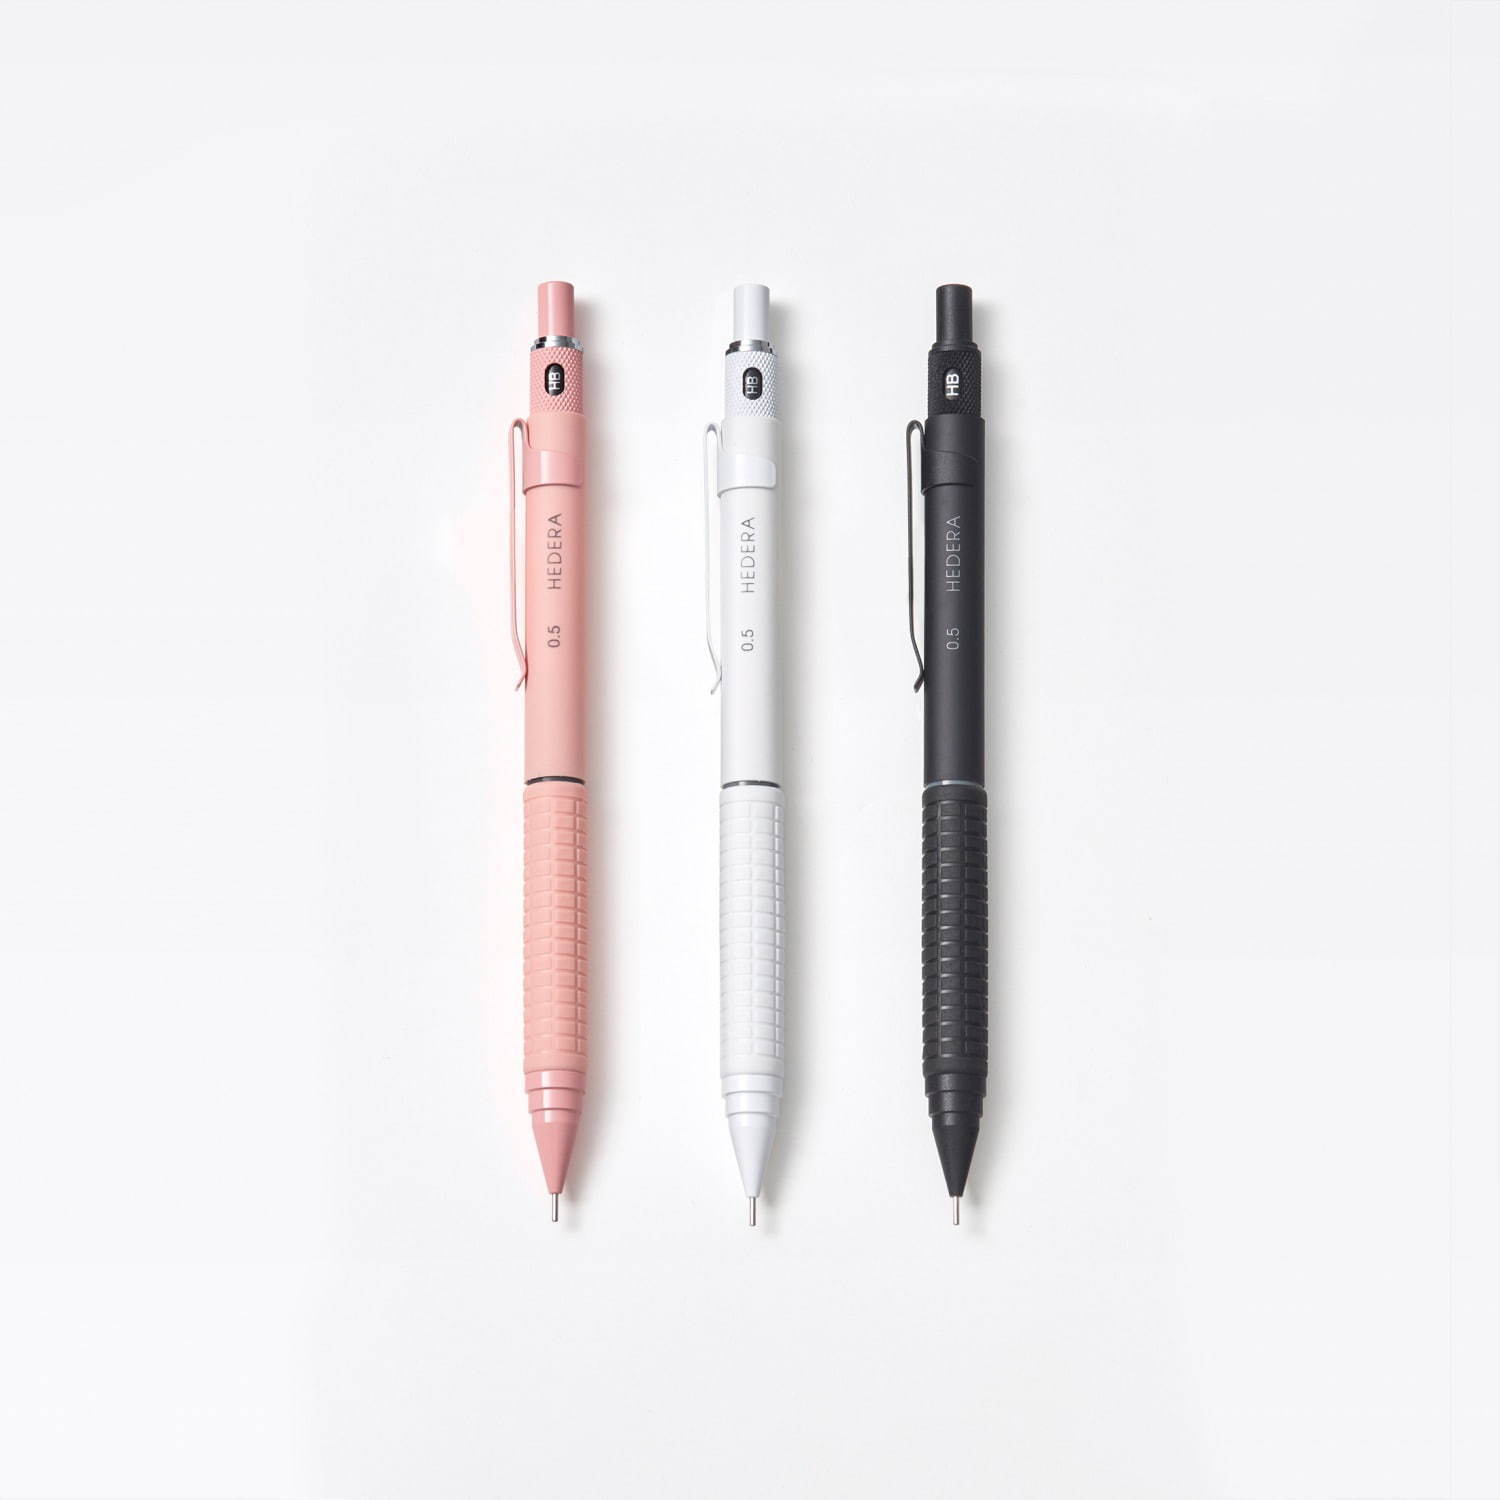 「製図用スタンダードシャープペン」
本体：全3色(ピンク/白/黒)
価格：1,000円＋税